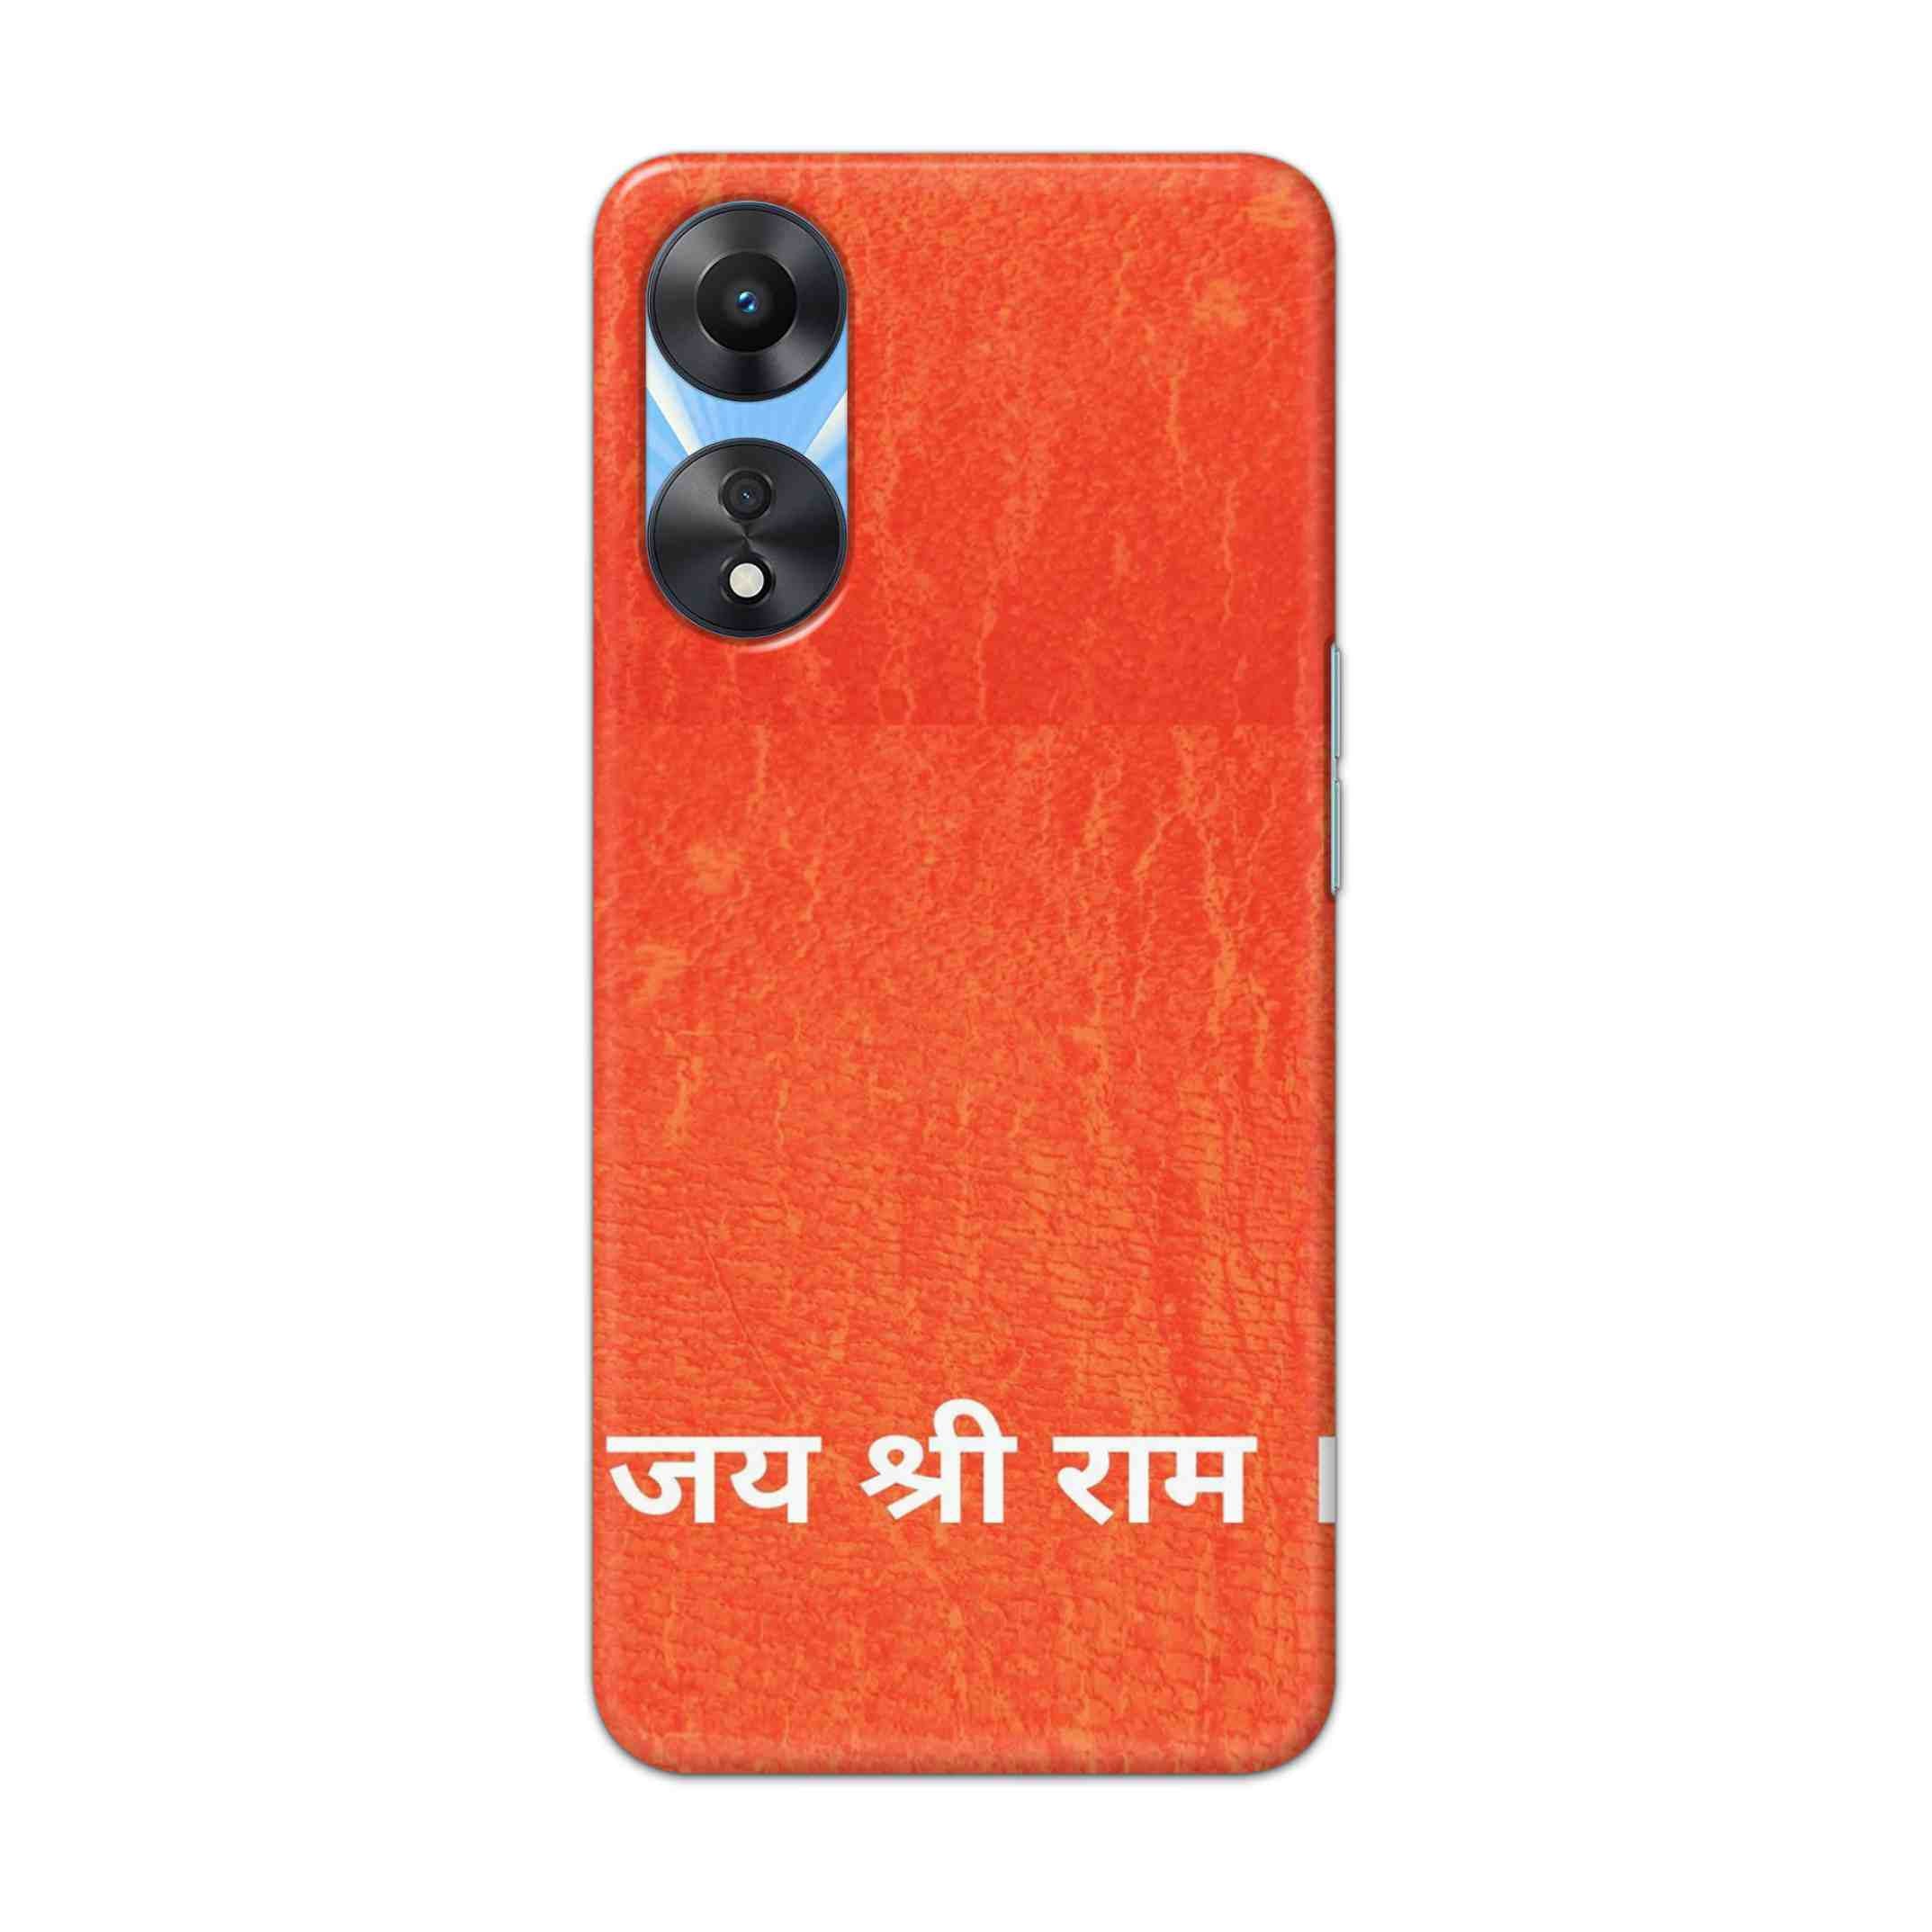 Buy Jai Shree Ram Hard Back Mobile Phone Case Cover For OPPO A78 Online